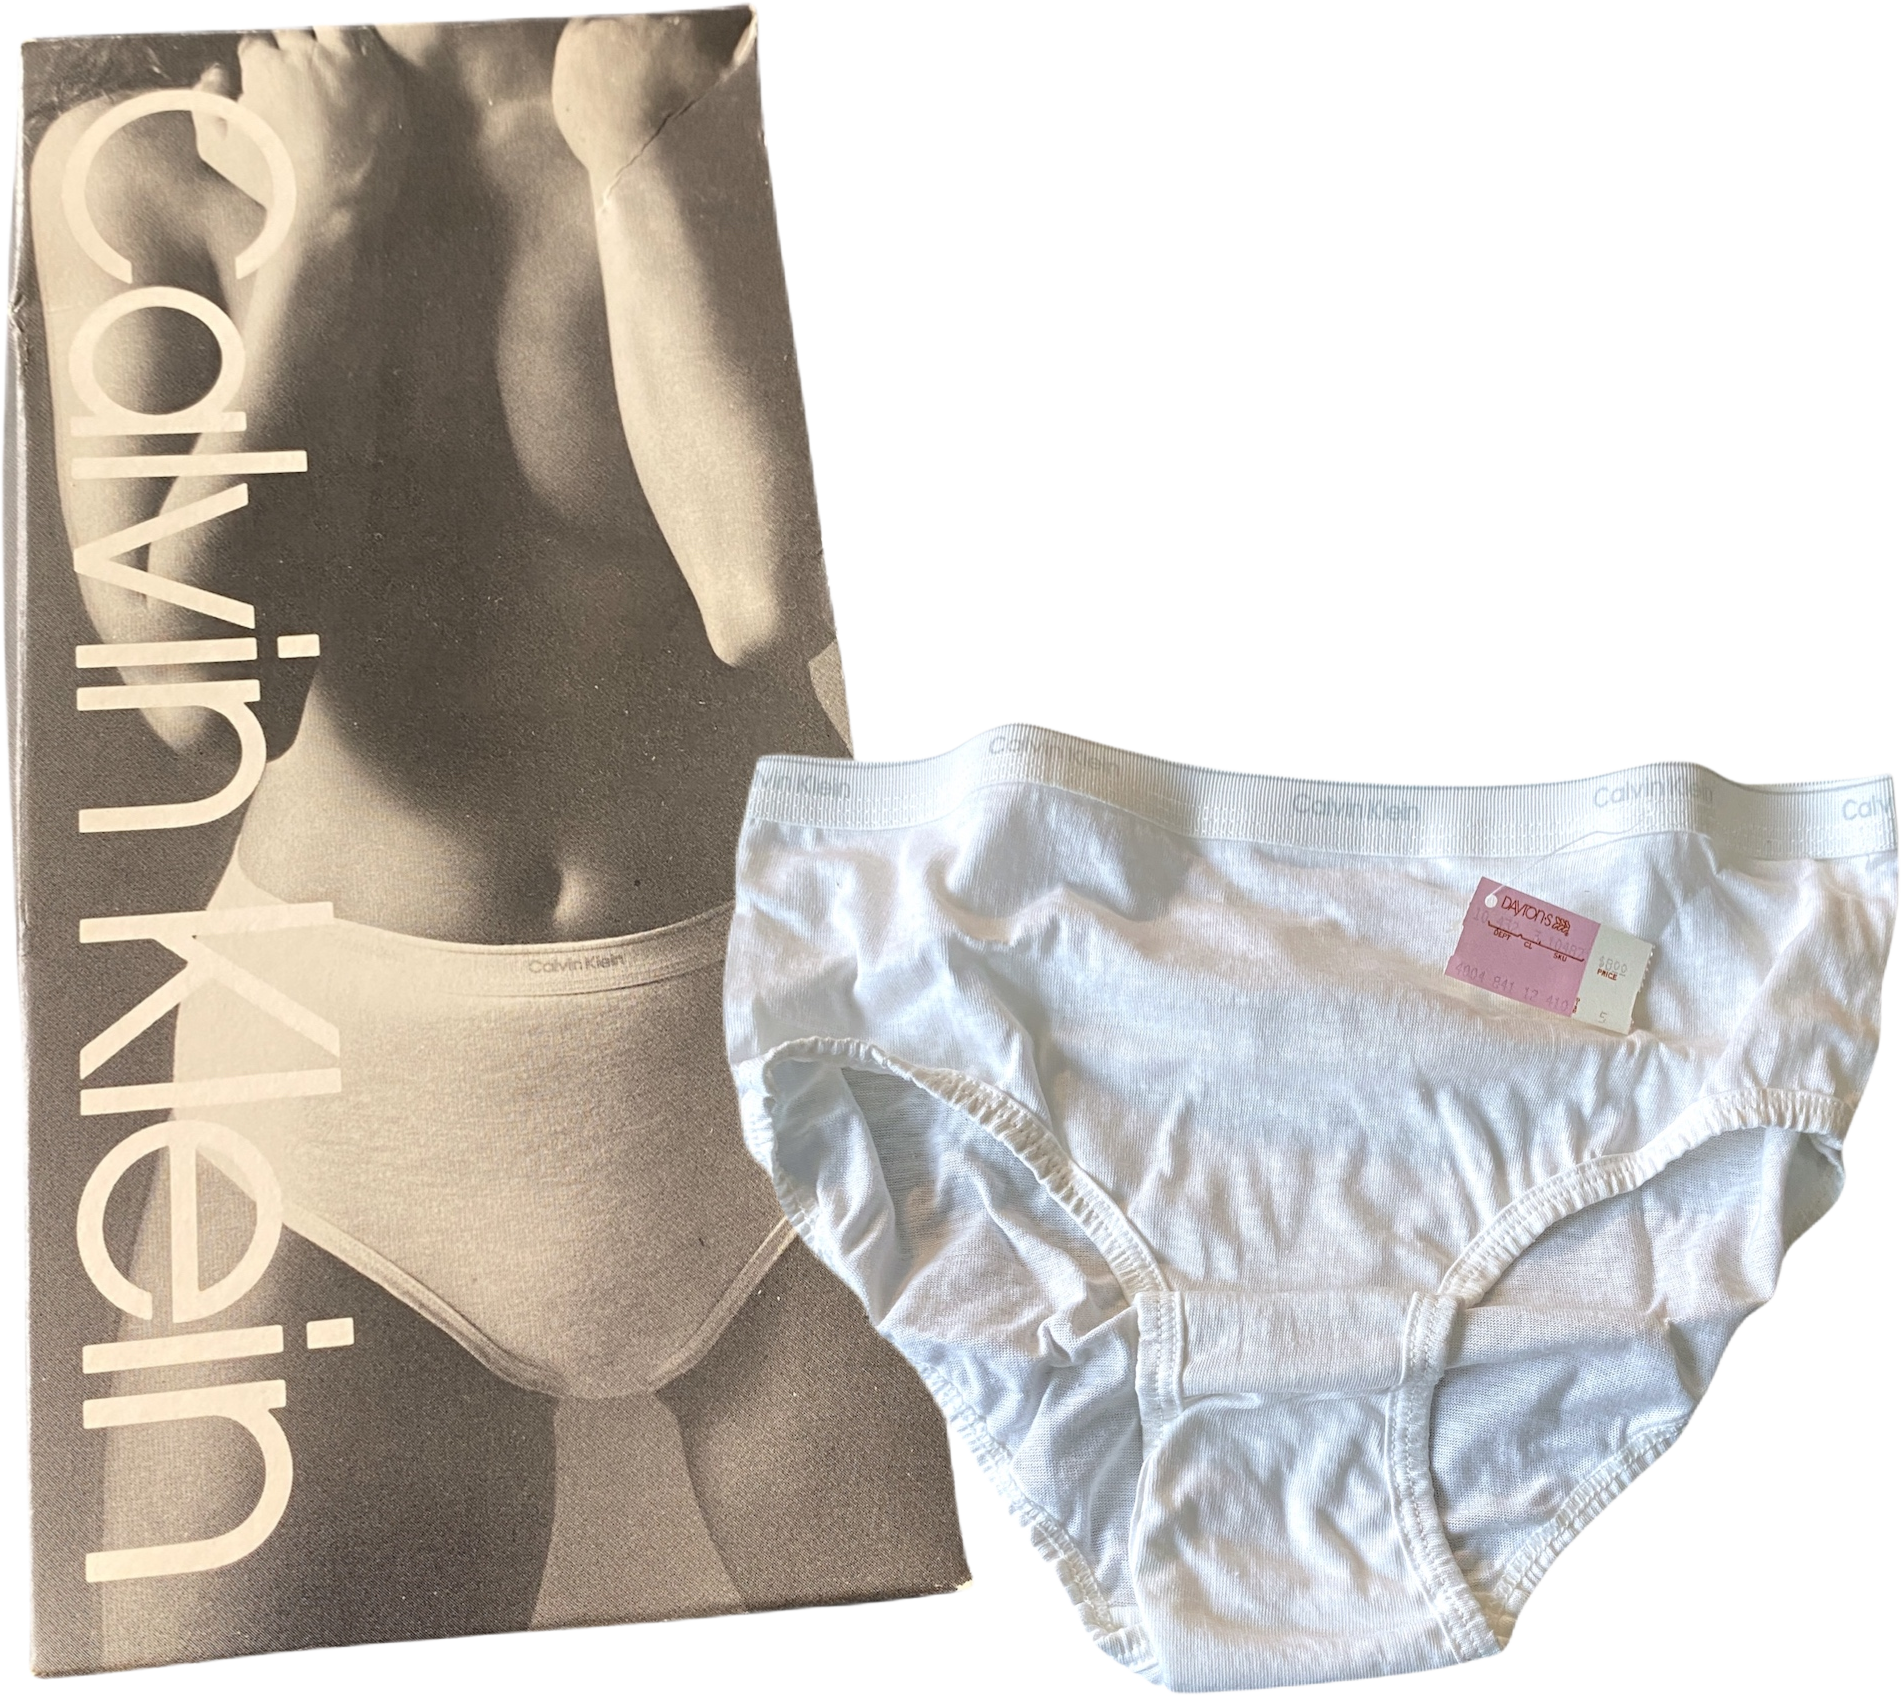 Vintage 1990’s Calvin Klein Athletic Underwear Sport Strap EMPTY BOX W/  Insert